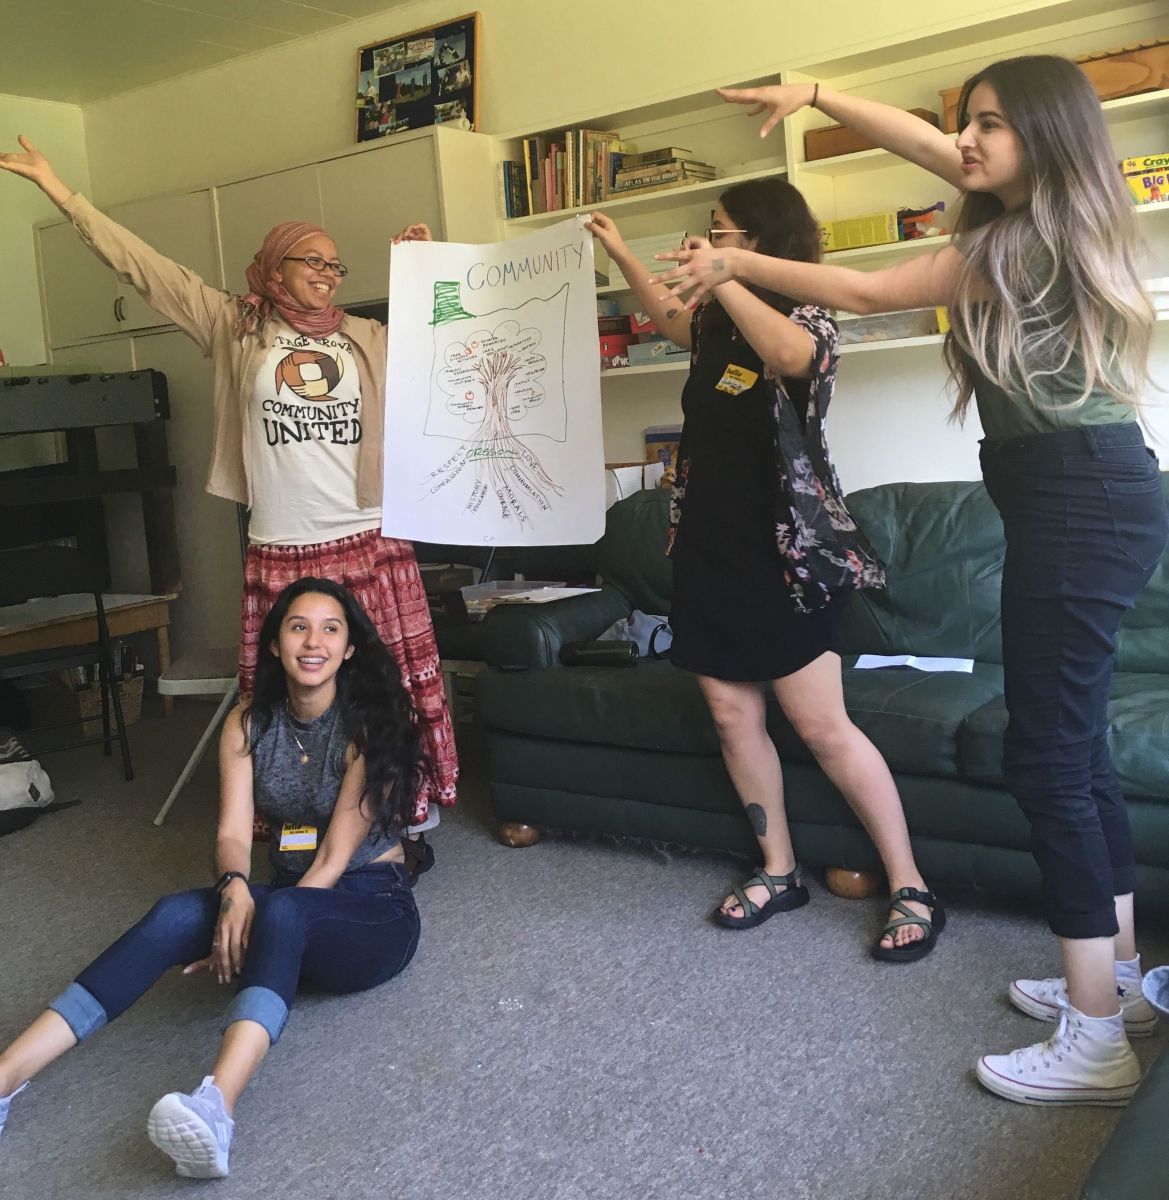 cuatro personas presentando un rotafolio con un dibujo de un árbol y un texto que dice comunidad.